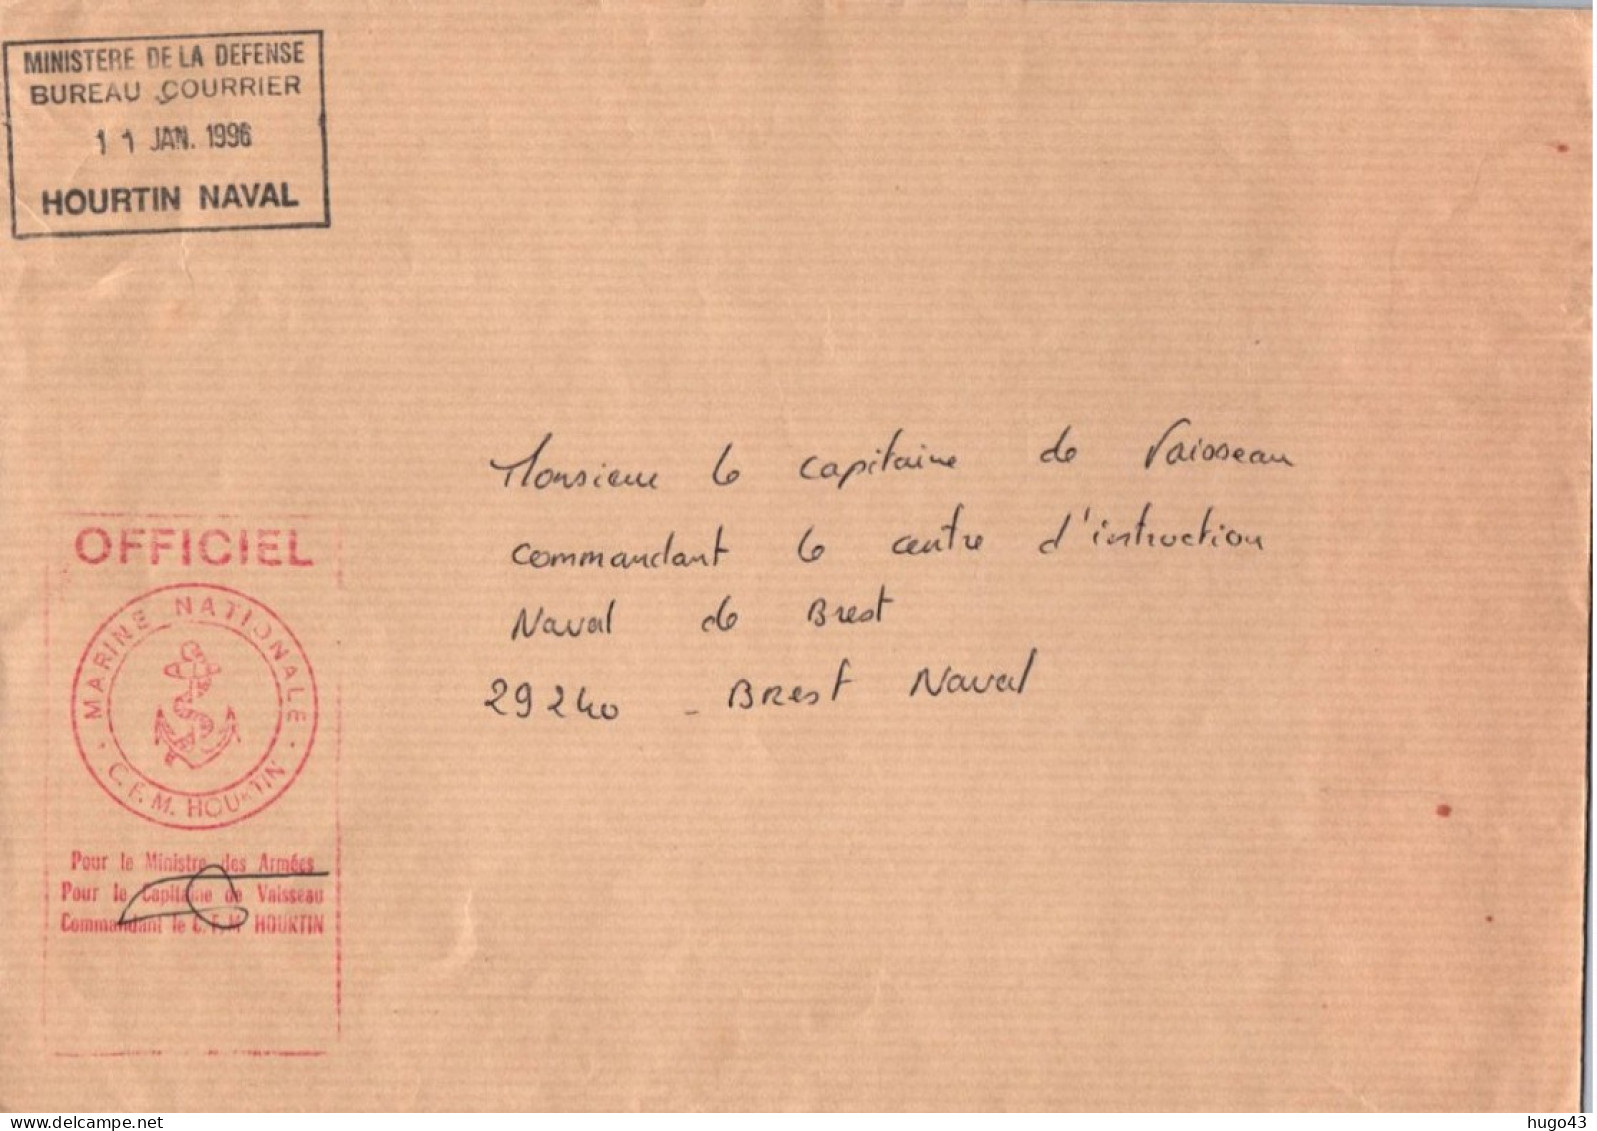 ENVELOPPE AVEC CACHET OFFICIEL CAPITAINE DE VAISSEAU COMMANDANT LE C.F.M. HOURTIN - LE 11/01/1996 - SIGNATURE - Seepost